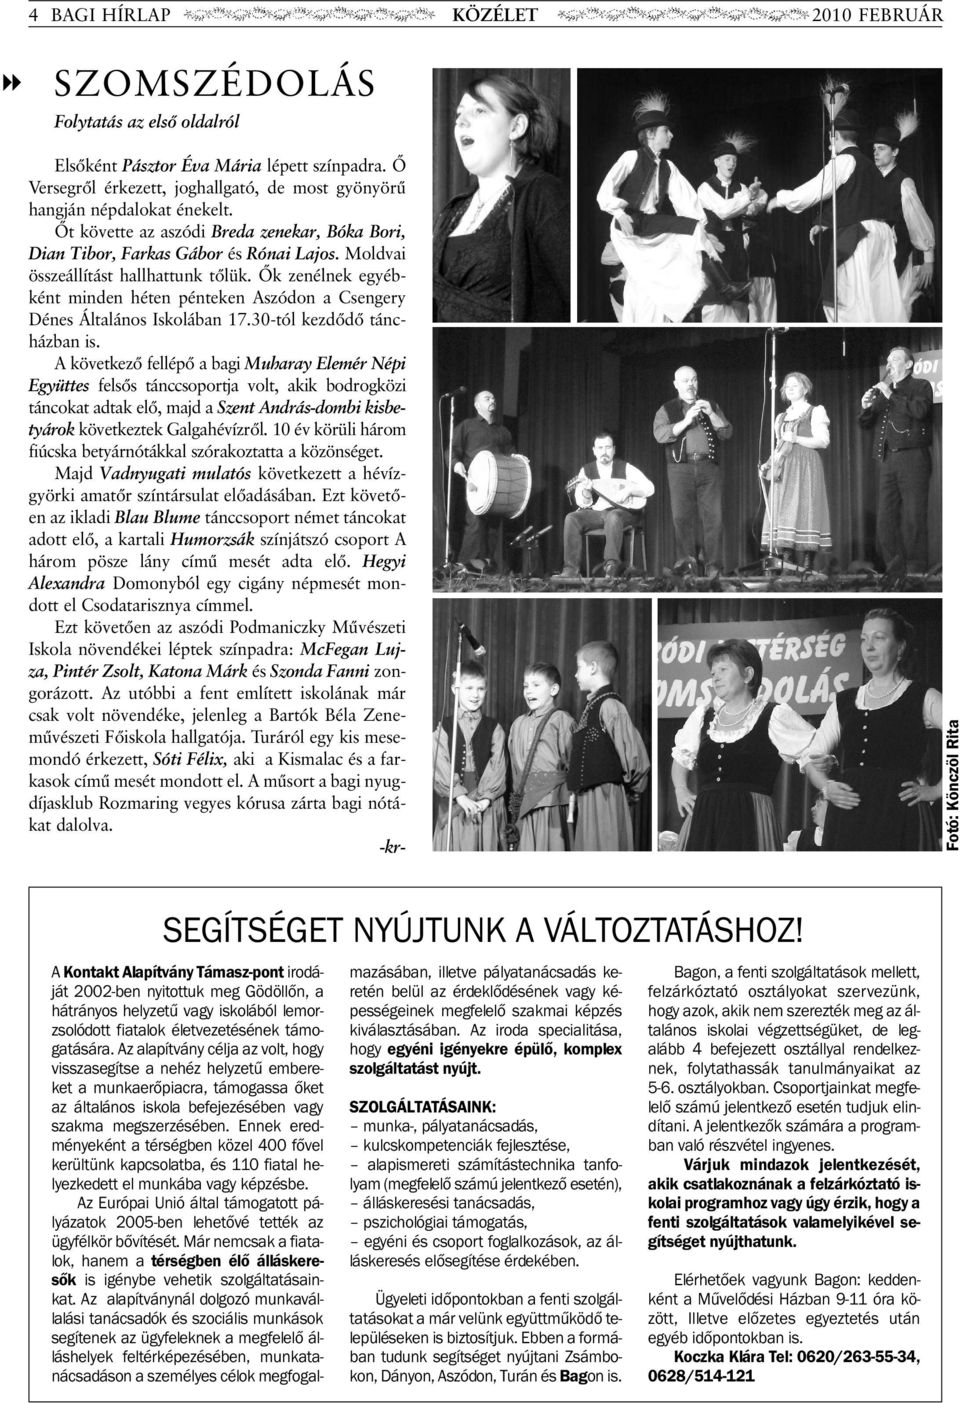 Õk zenélnek egyébként minden héten pénteken Aszódon a Csengery Dénes Általános Iskolában 17.30-tól kezdõdõ táncházban is.